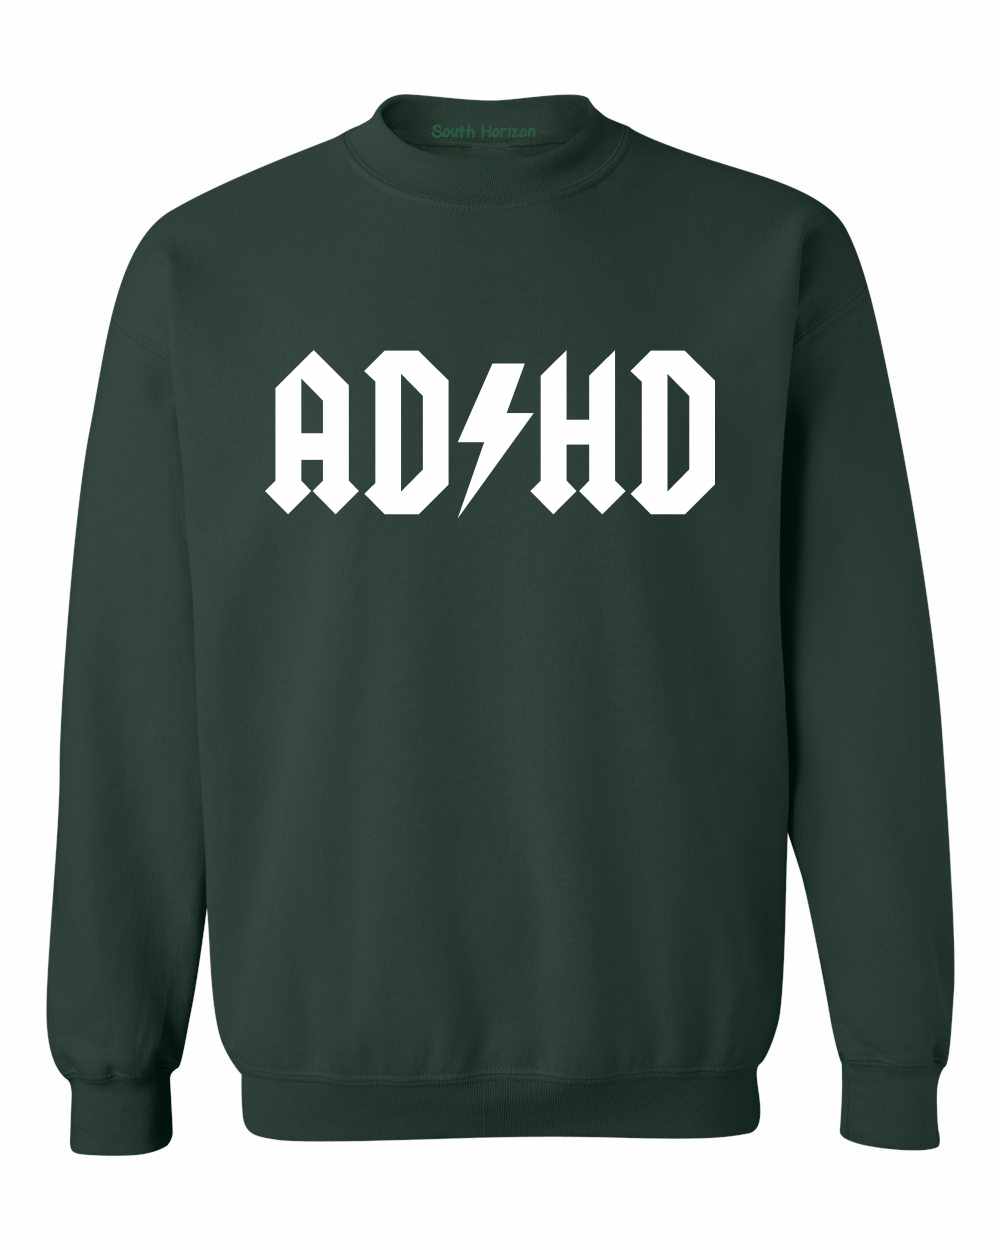 ADHD on SweatShirt (#828-11)